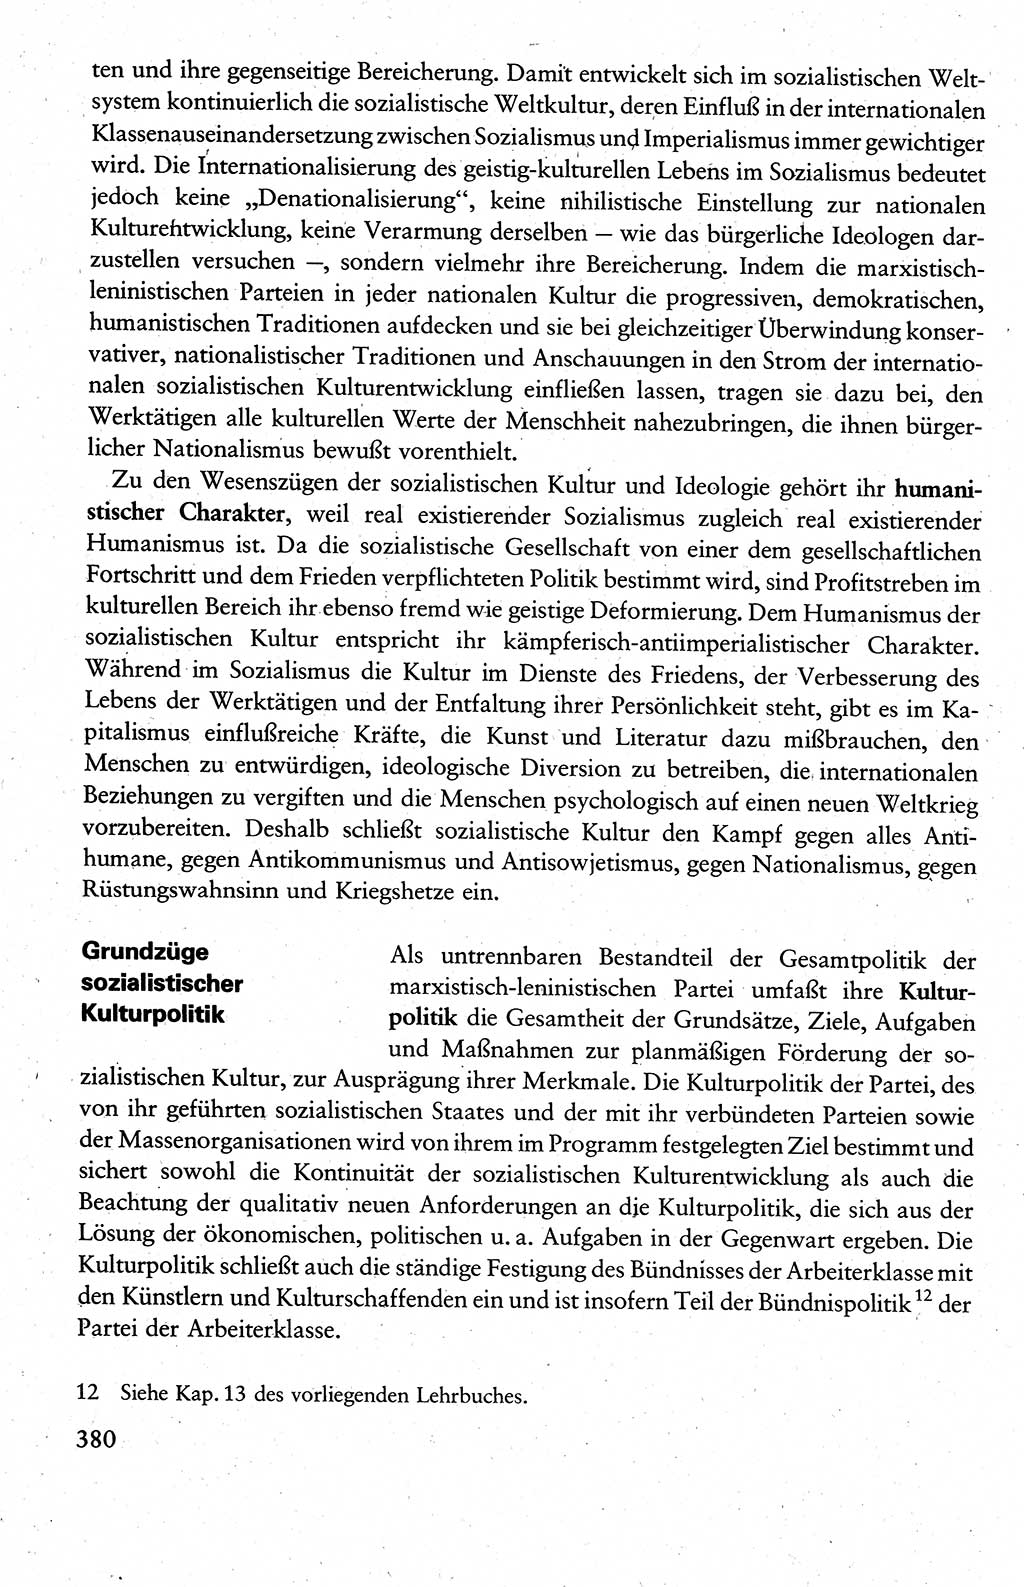 Wissenschaftlicher Kommunismus [Deutsche Demokratische Republik (DDR)], Lehrbuch für das marxistisch-leninistische Grundlagenstudium 1983, Seite 380 (Wiss. Komm. DDR Lb. 1983, S. 380)